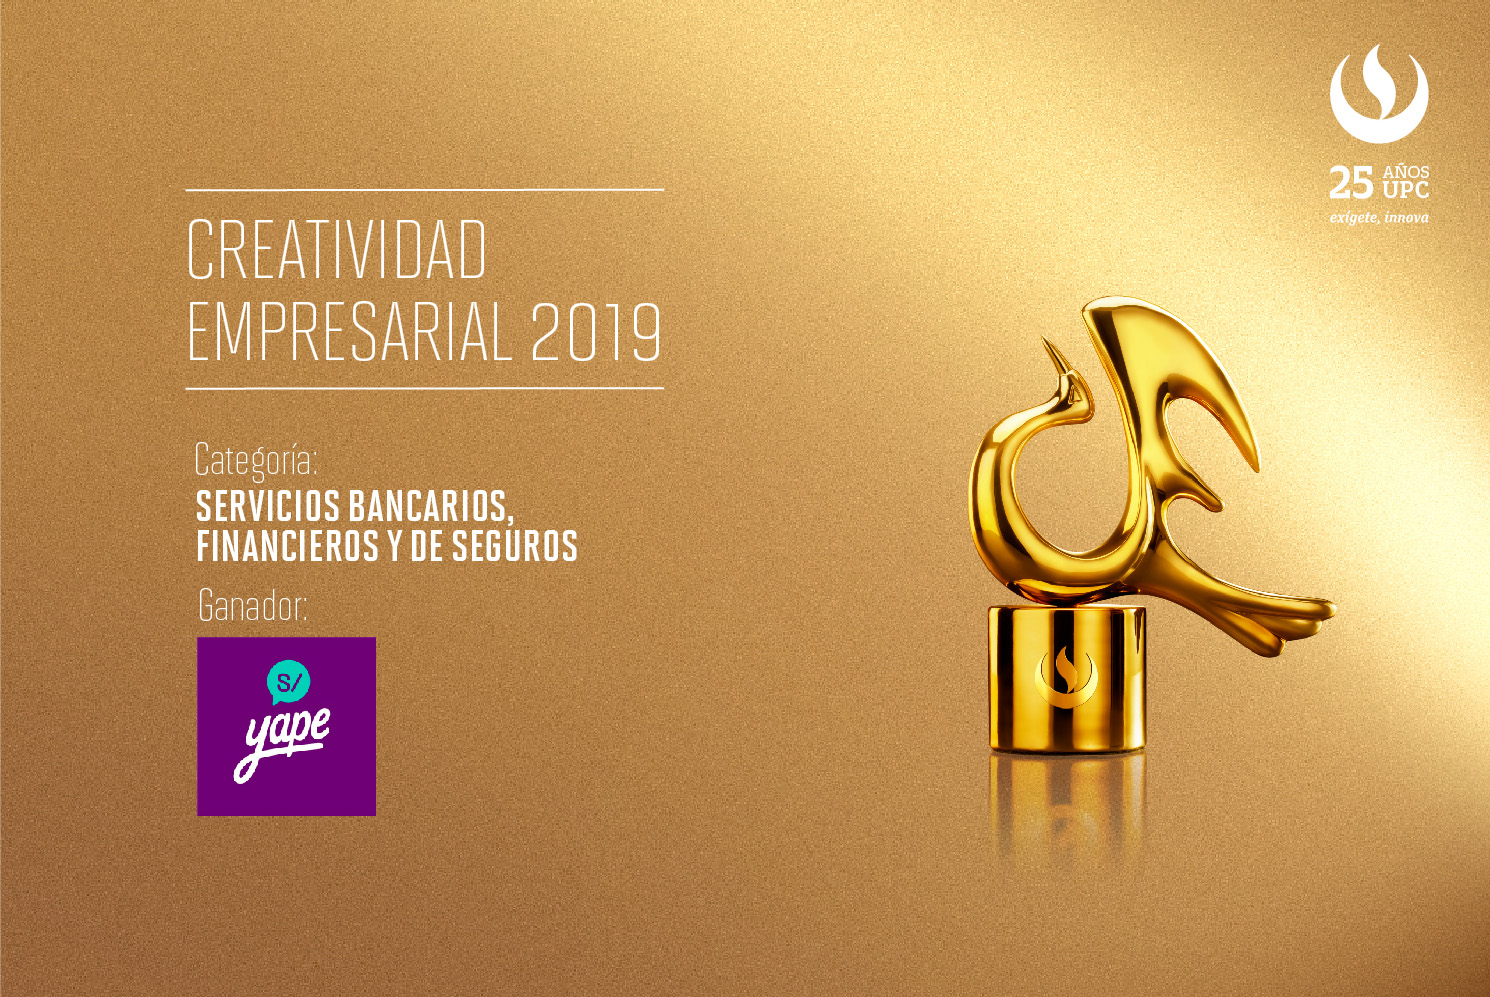 Creatividad Empresarial 2019: ‘YAPE’ del BCP recibió reconocimiento en categoría Servicios Bancarios, Financieros y de Seguros